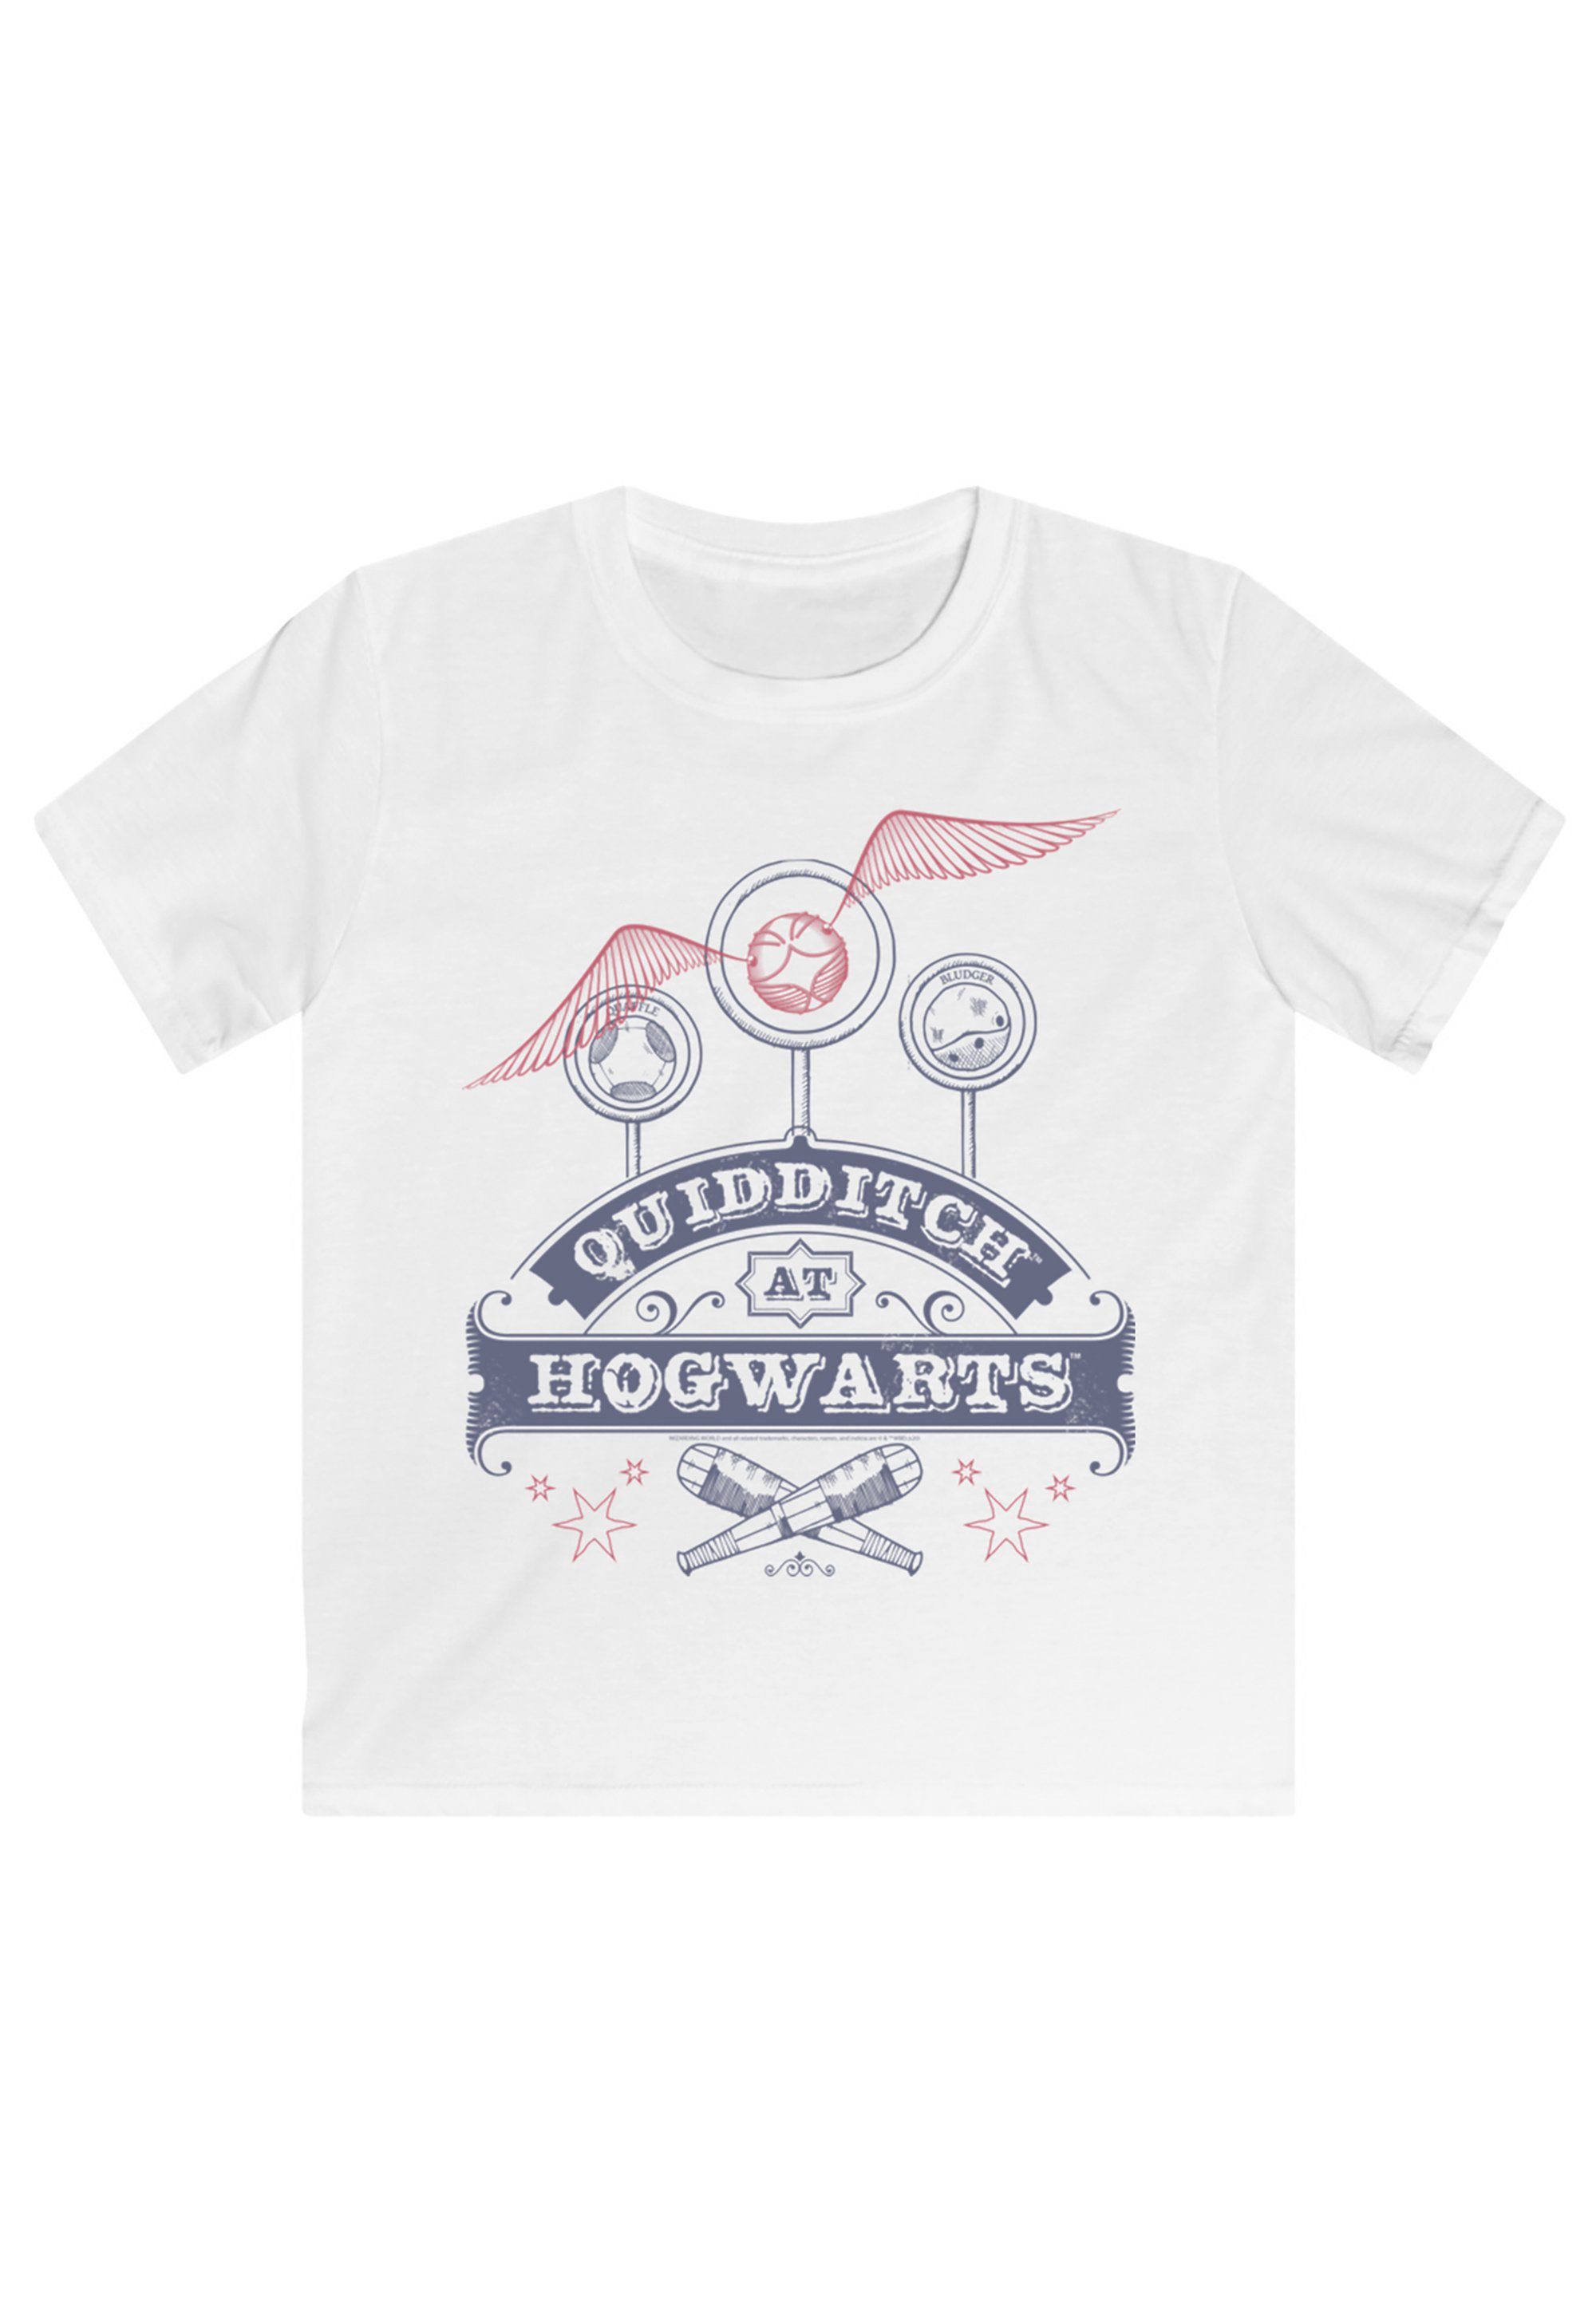 F4NT4STIC T-Shirt Harry Potter Quidditch Hogwarts Print, Offiziell  lizenziertes Harry Potter T-Shirt